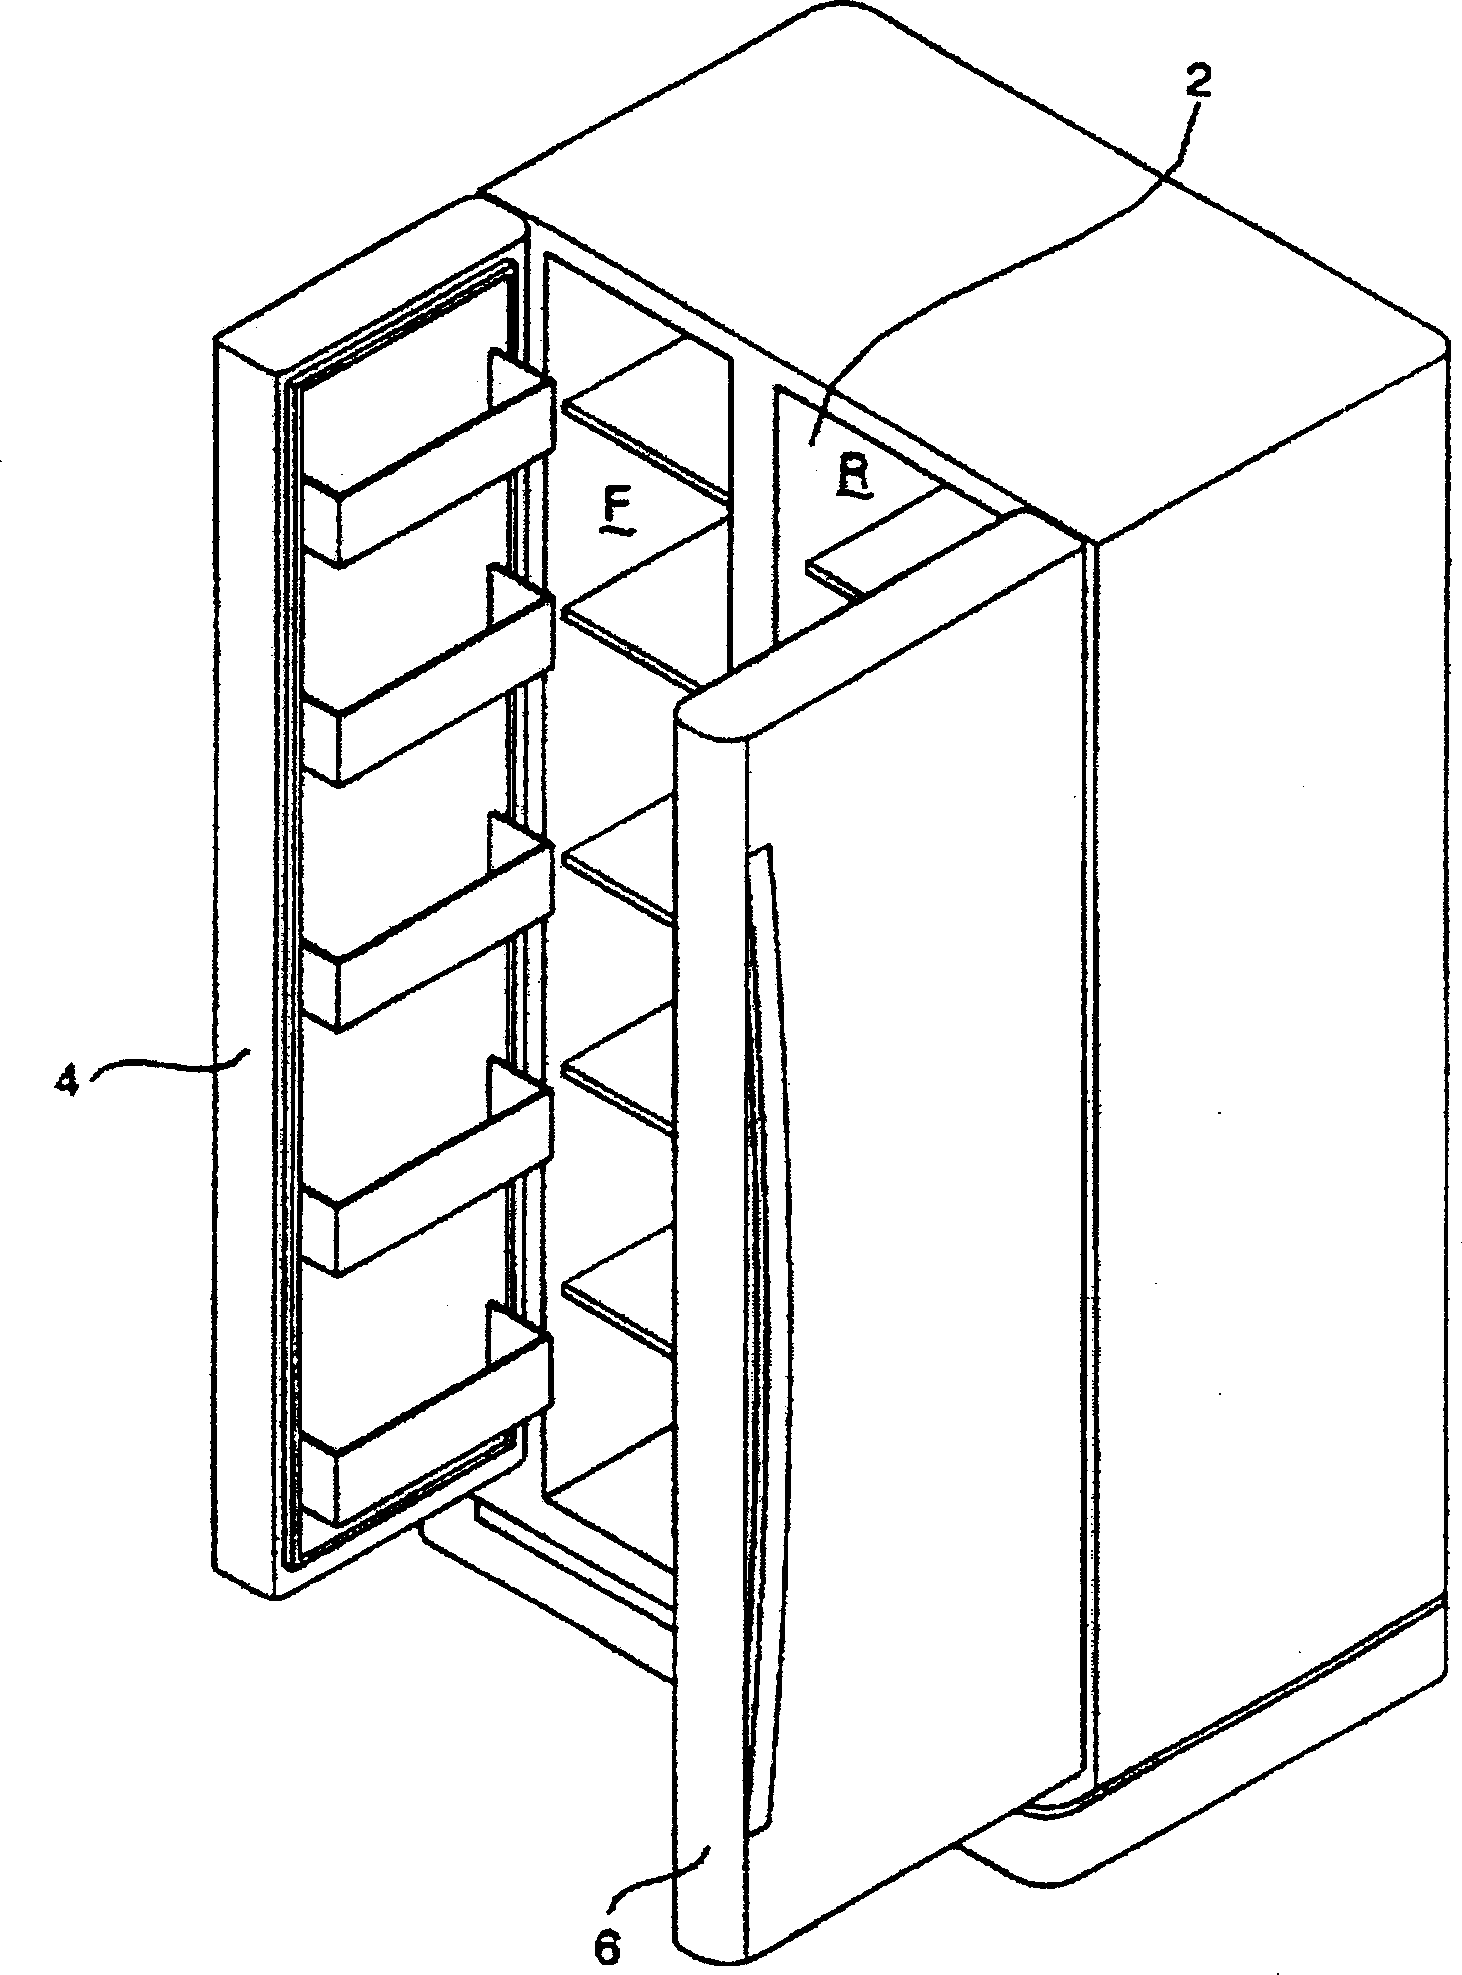 Temperature control method of refrigerator